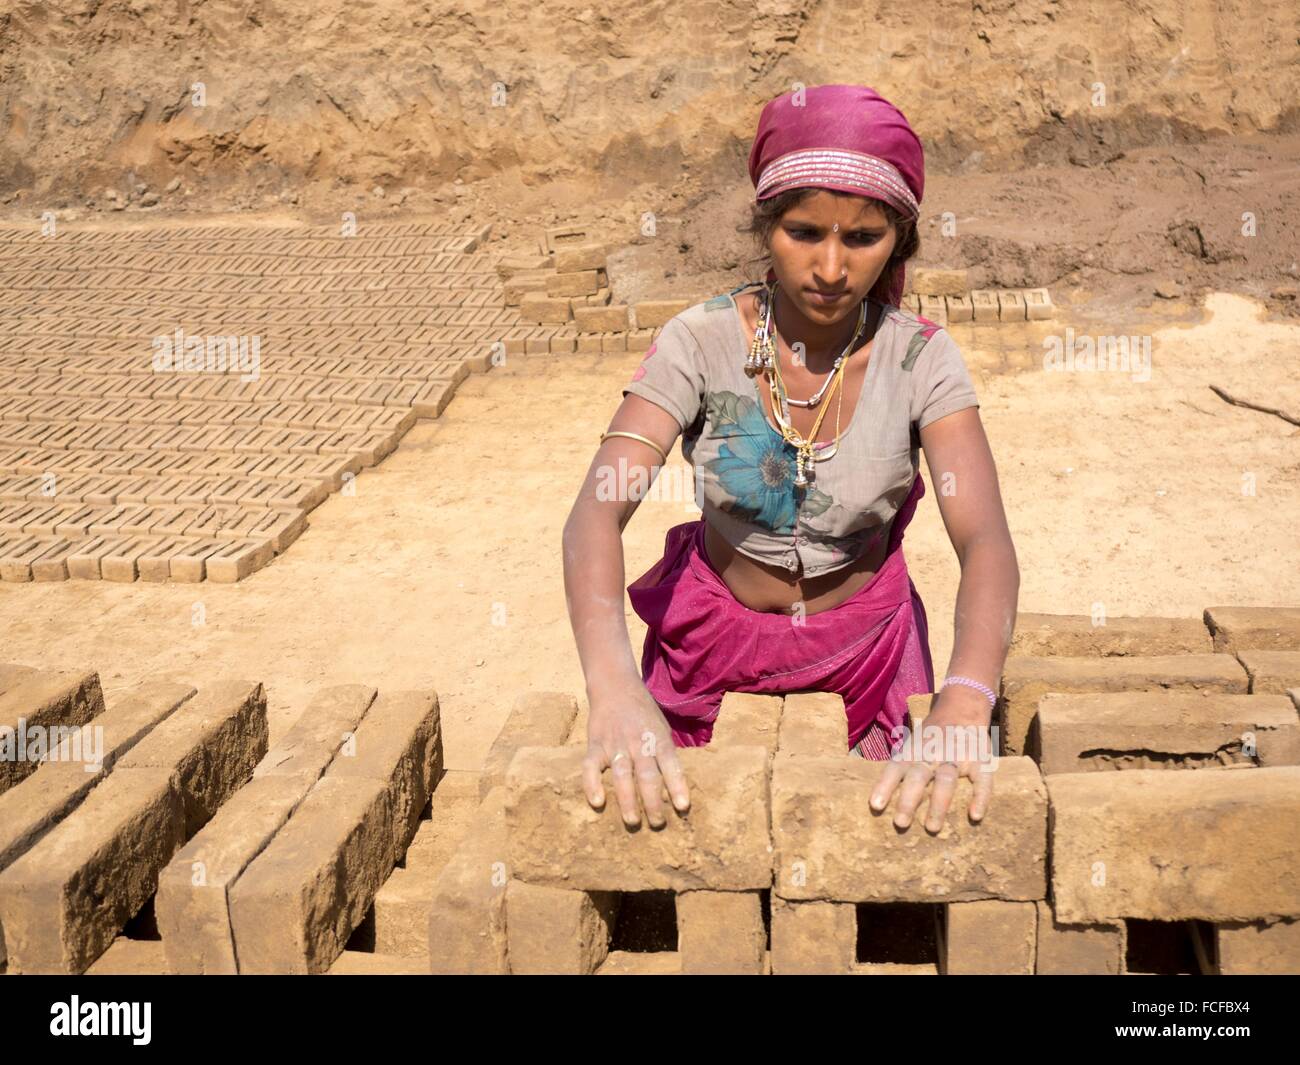 Woman with mud bricks in Chhatrasagar, Rajasthan, India Stock Photo